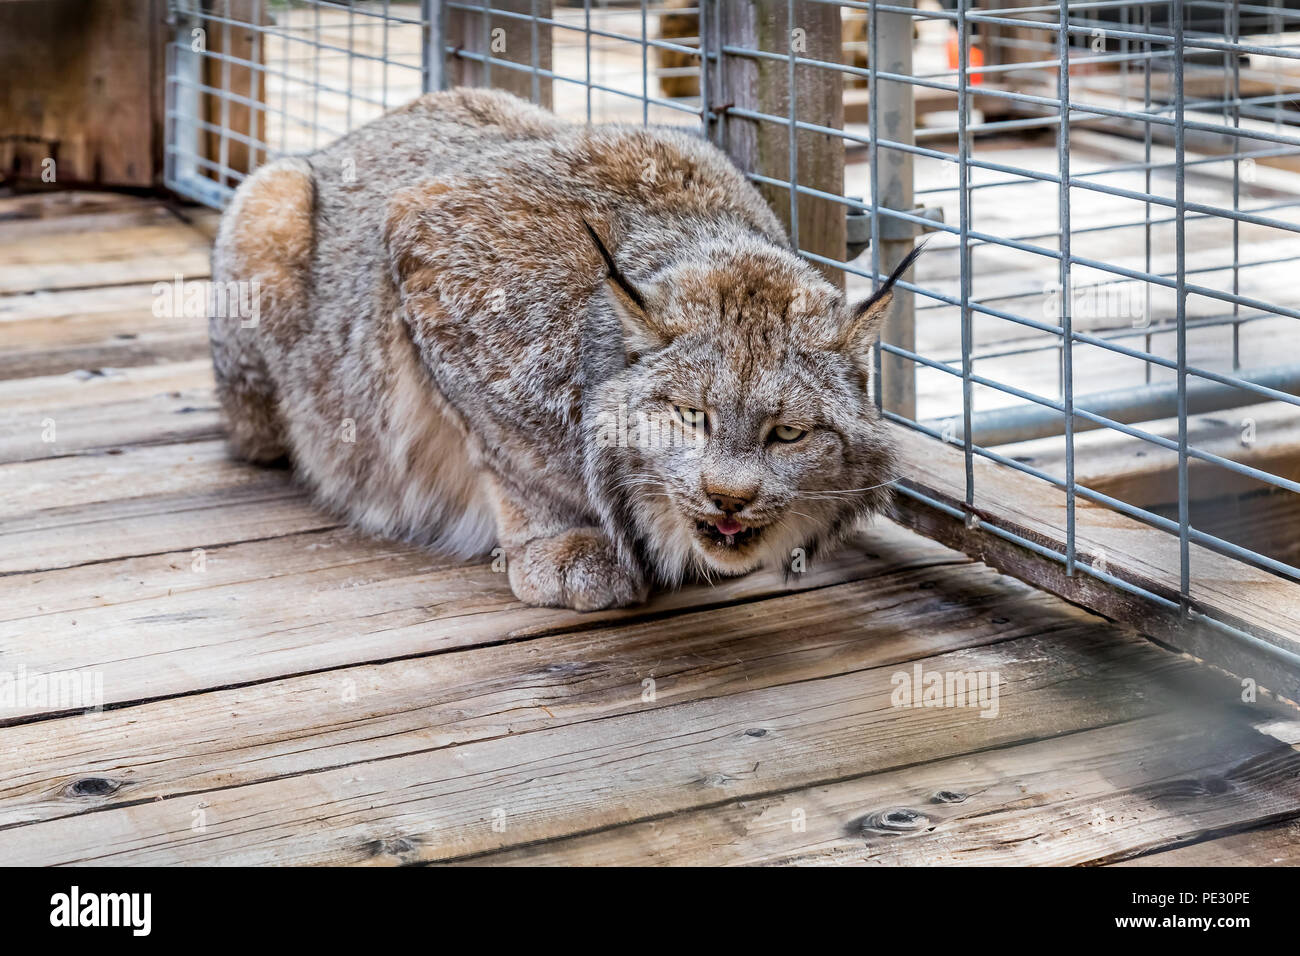 Les lynx sauvages et de l'alimentation à l'appareil photo à straignt, dans une cage à un sanctuaire Banque D'Images